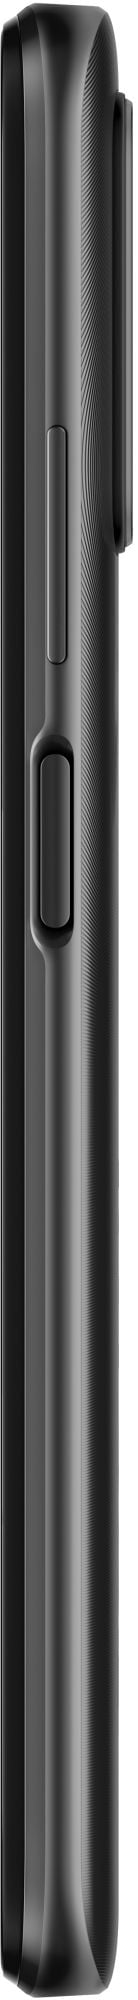 Xiaomi Redmi 9T 64GB carbon gray